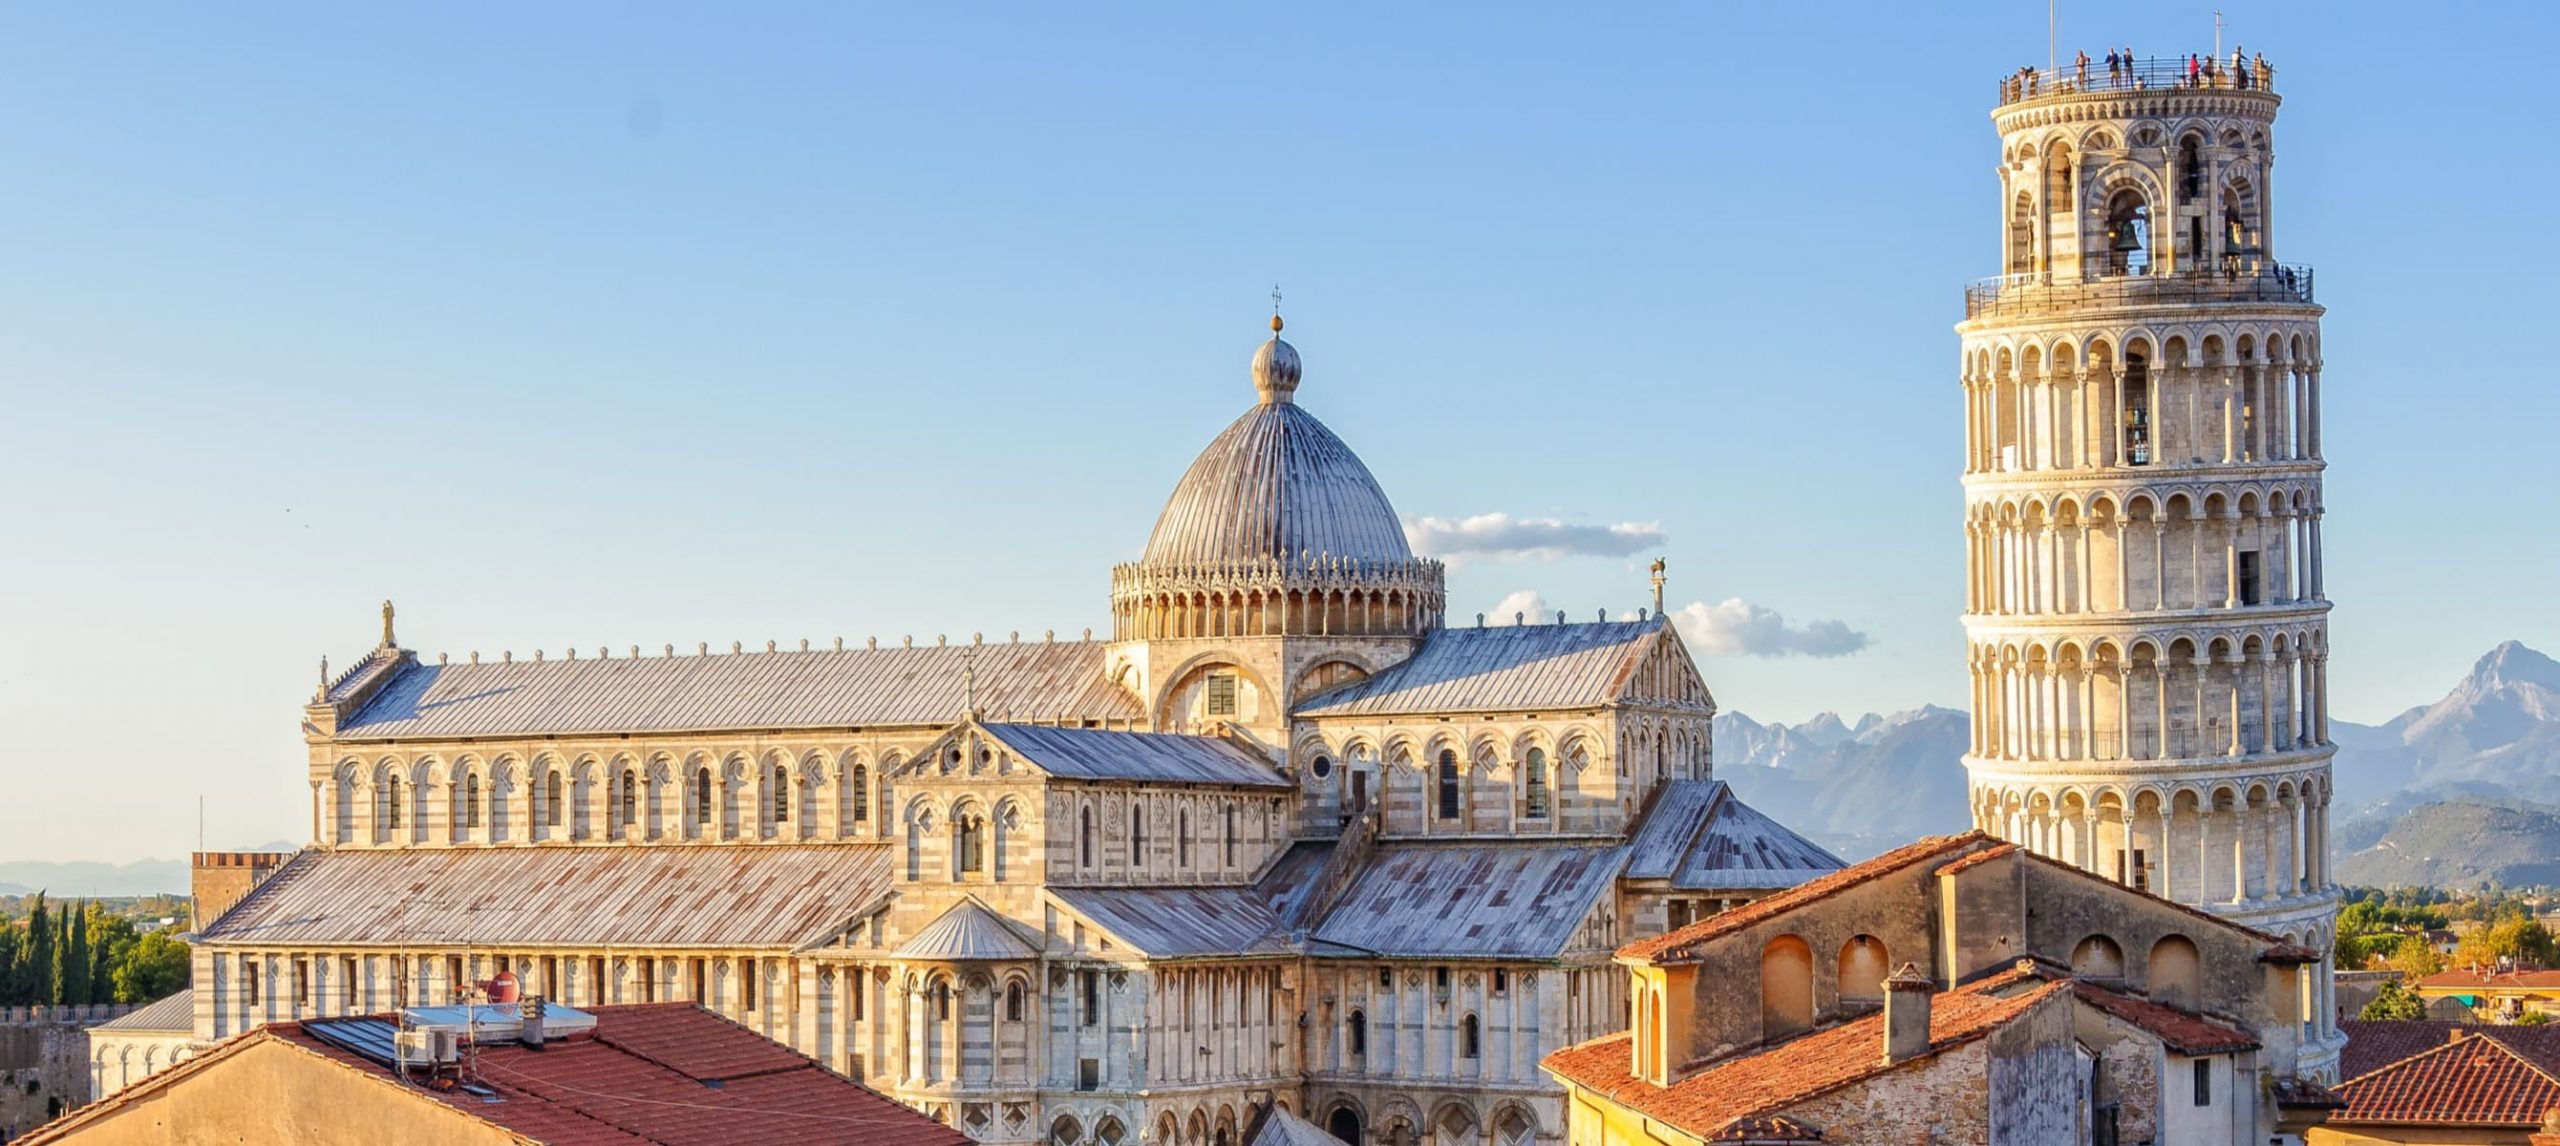 What To Do In Pisa: Top 7 Activities